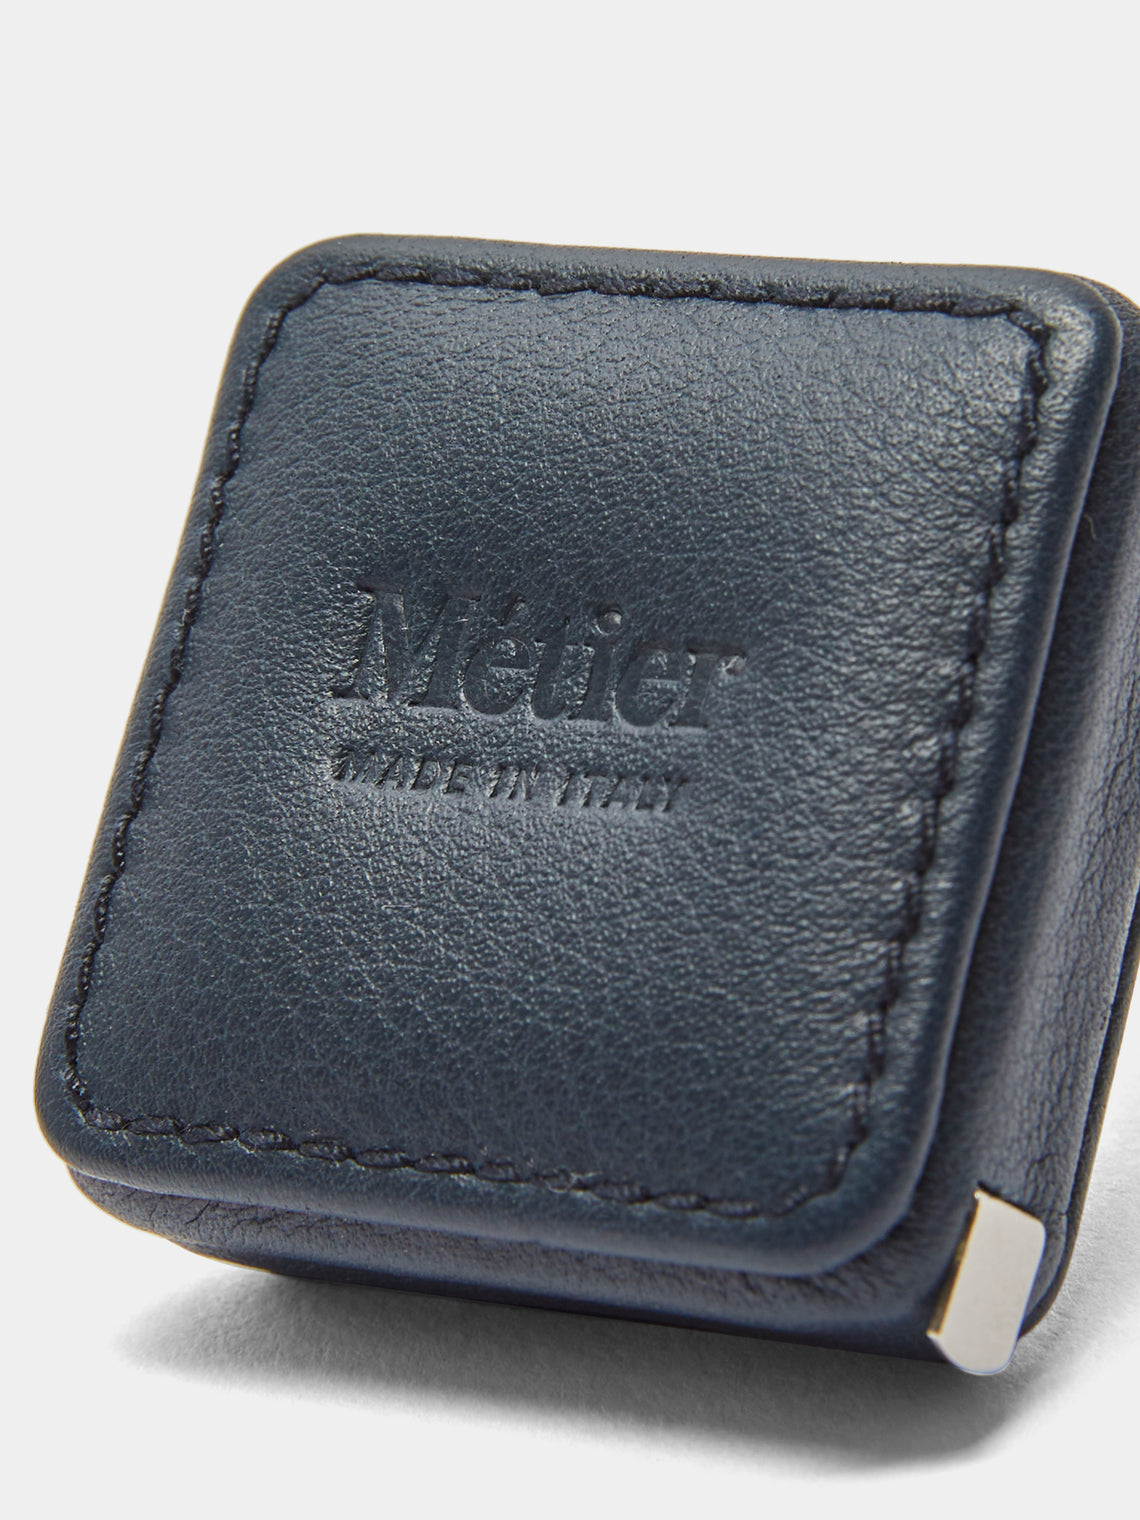 Métier - Leather Measuring Tape - Blue - ABASK